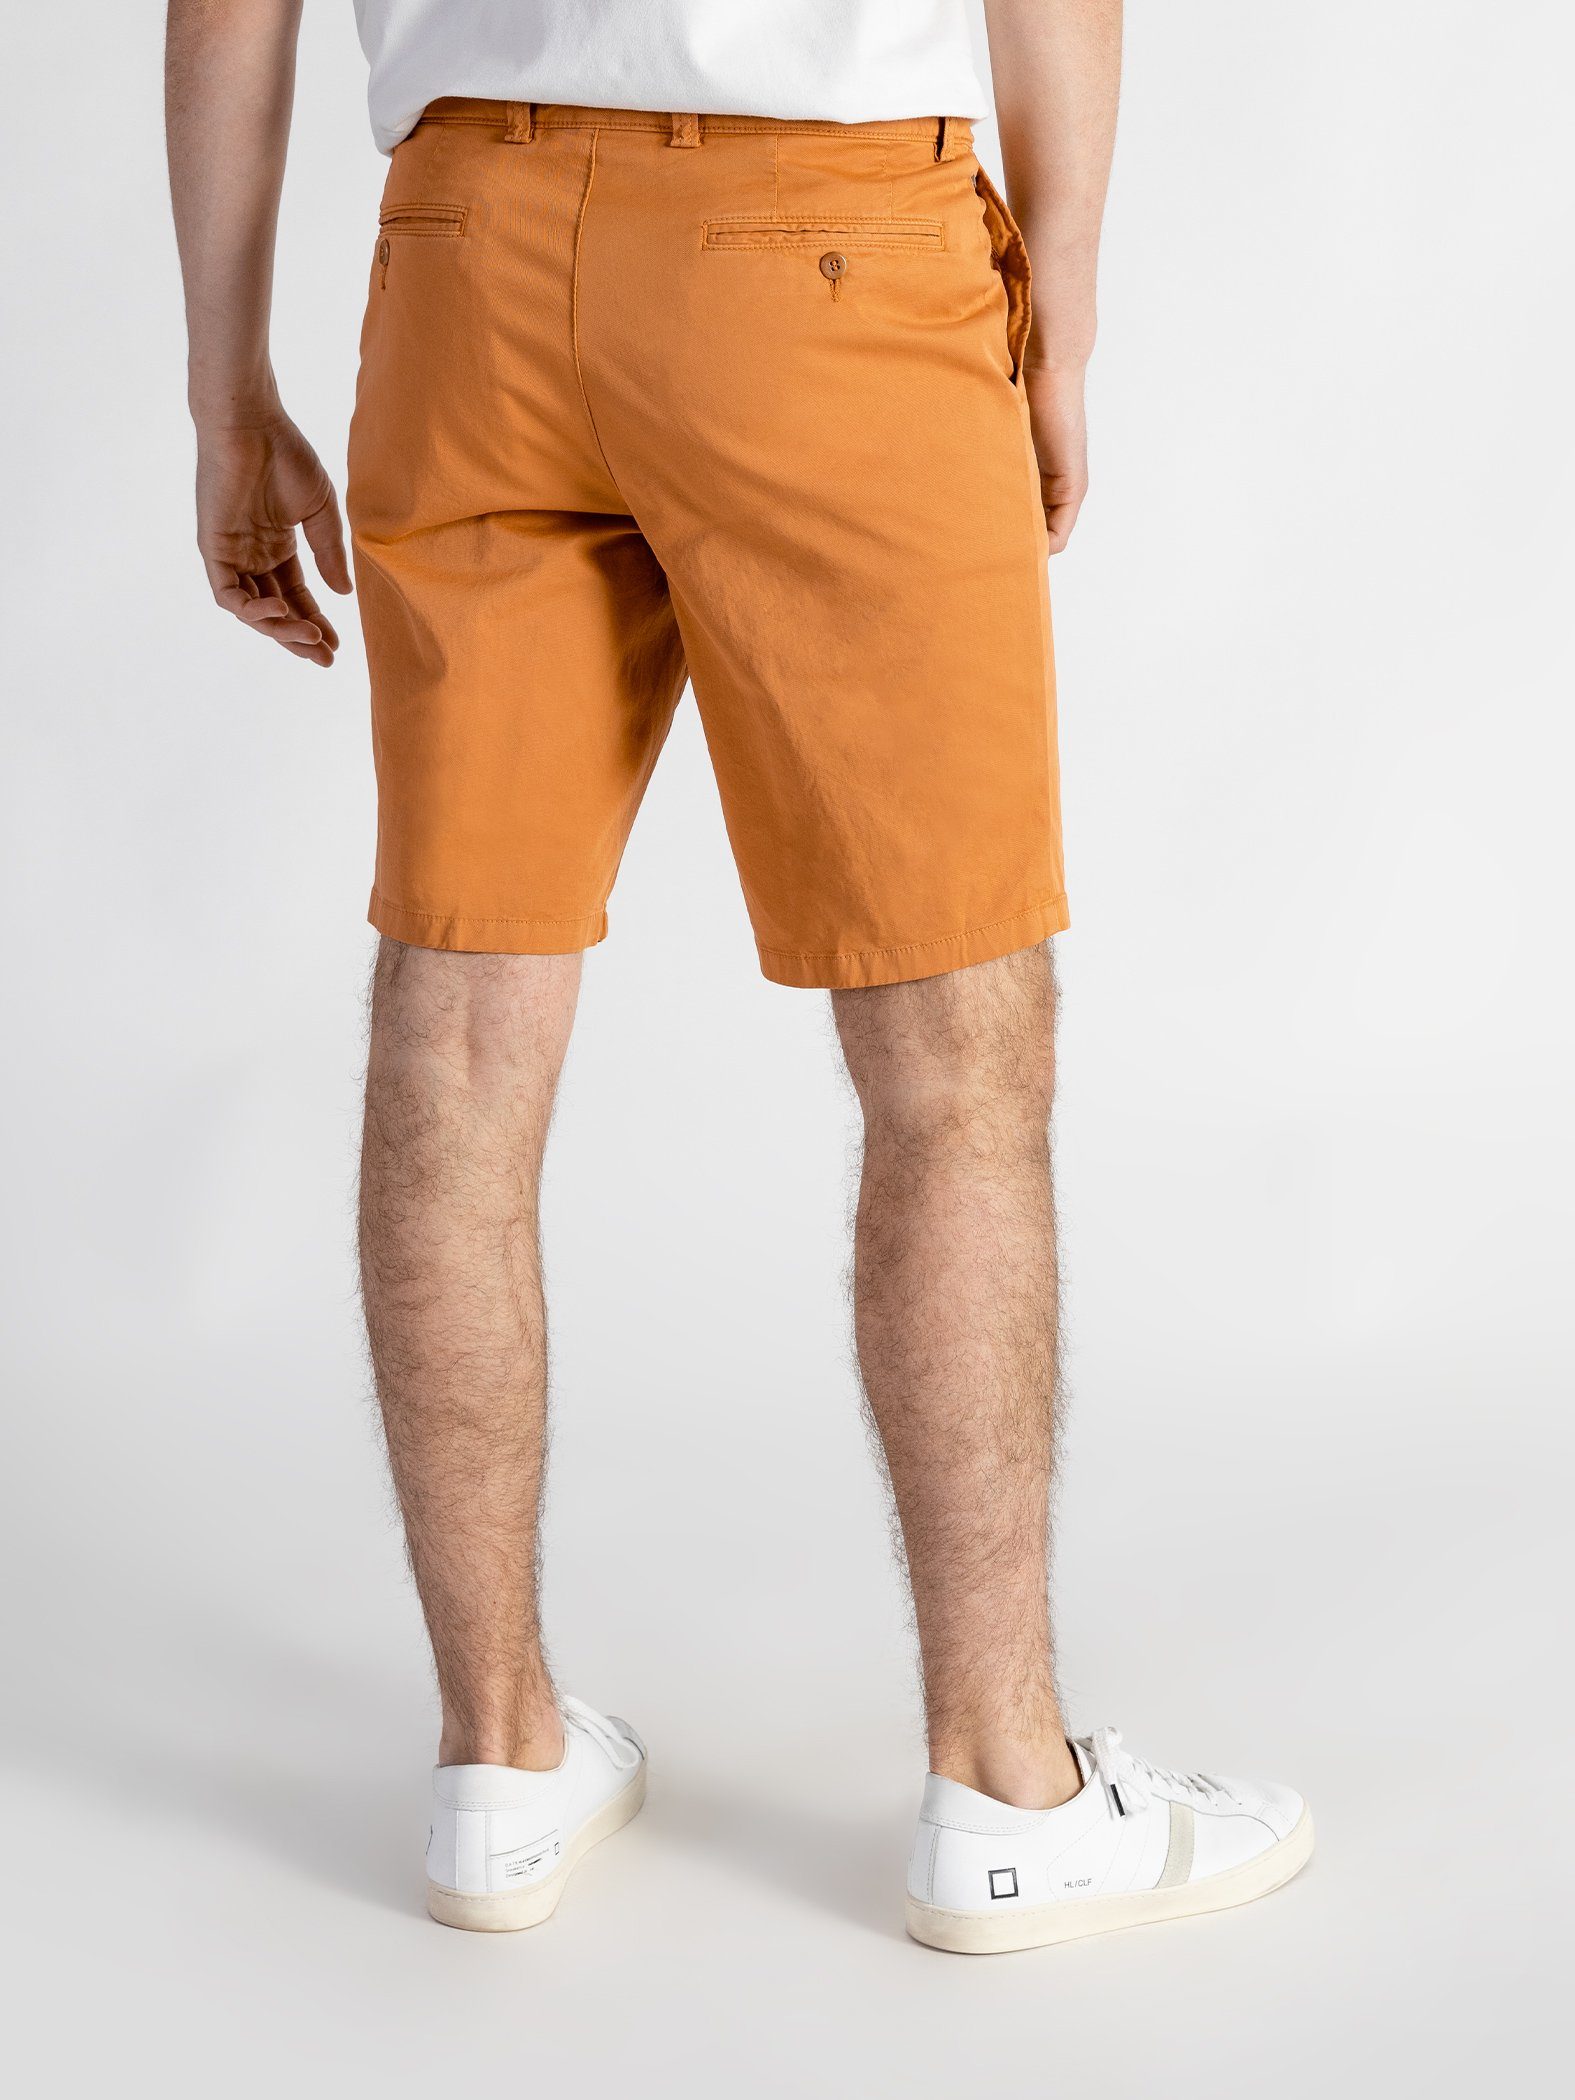 TwoMates Shorts Shorts mit elastischem Orange Farbauswahl, GOTS-zertifiziert Bund